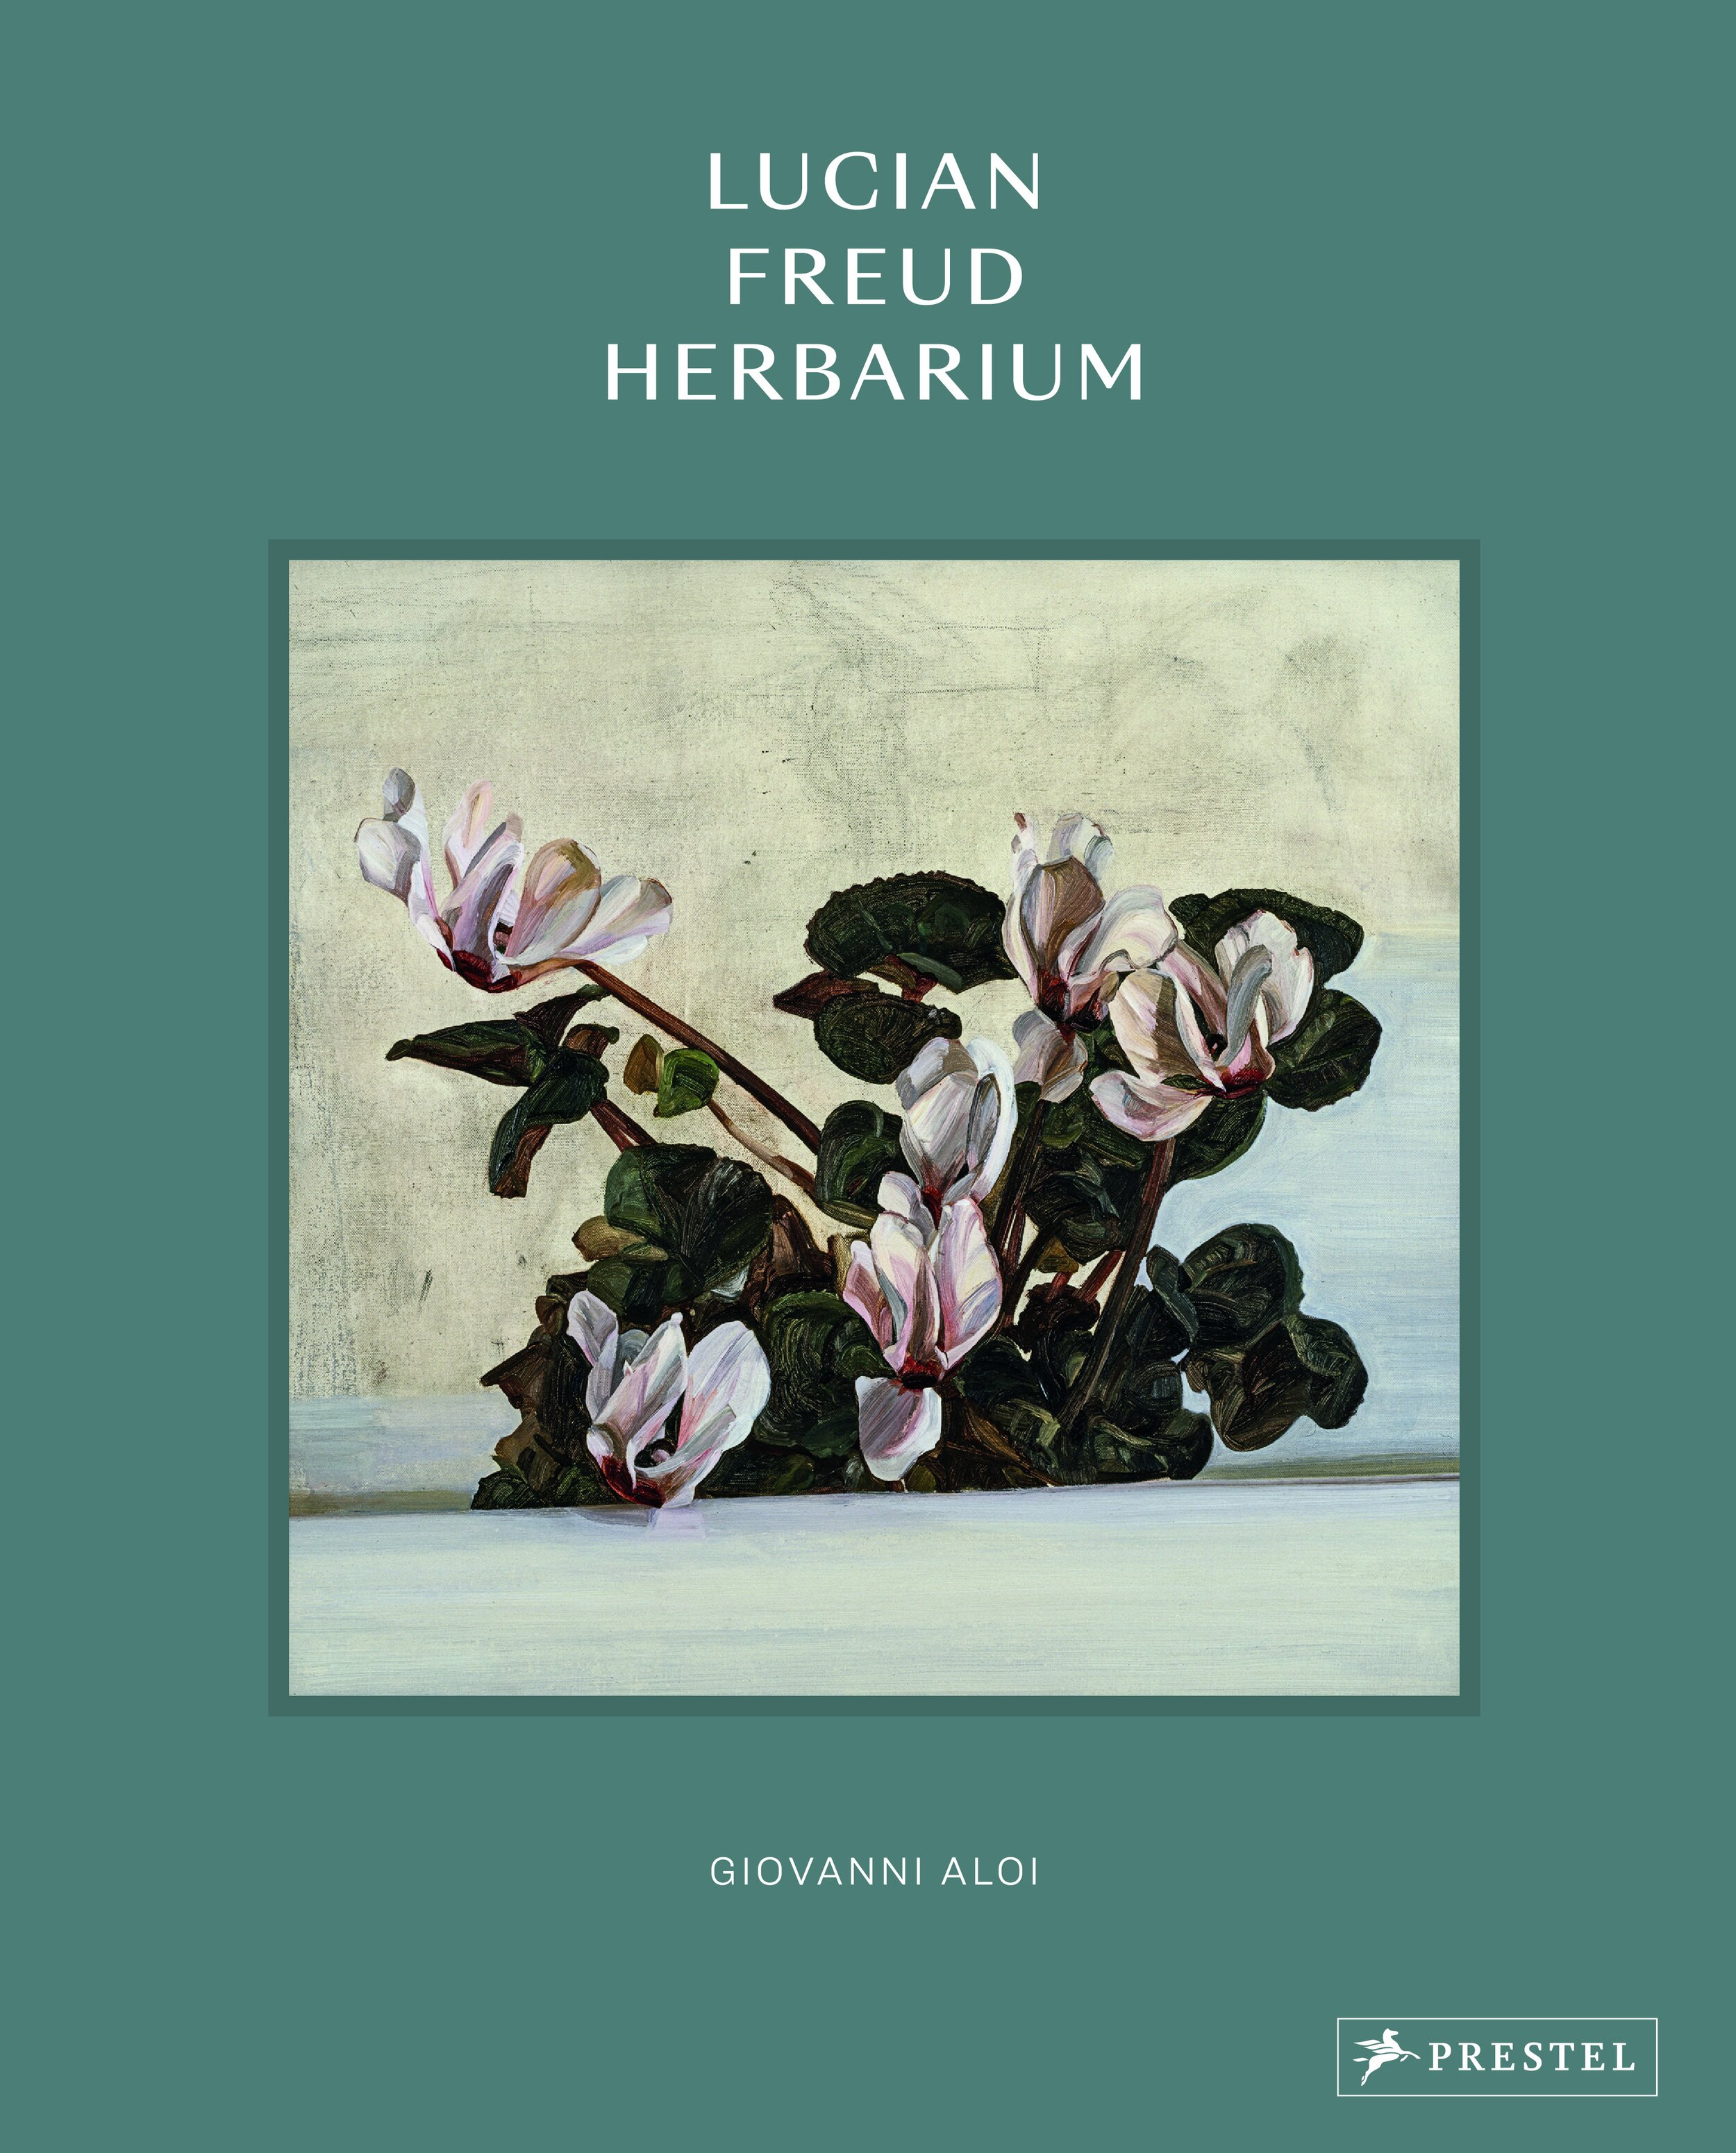 Lucian_Freud_Herbarium_199210_300dpi.jpg